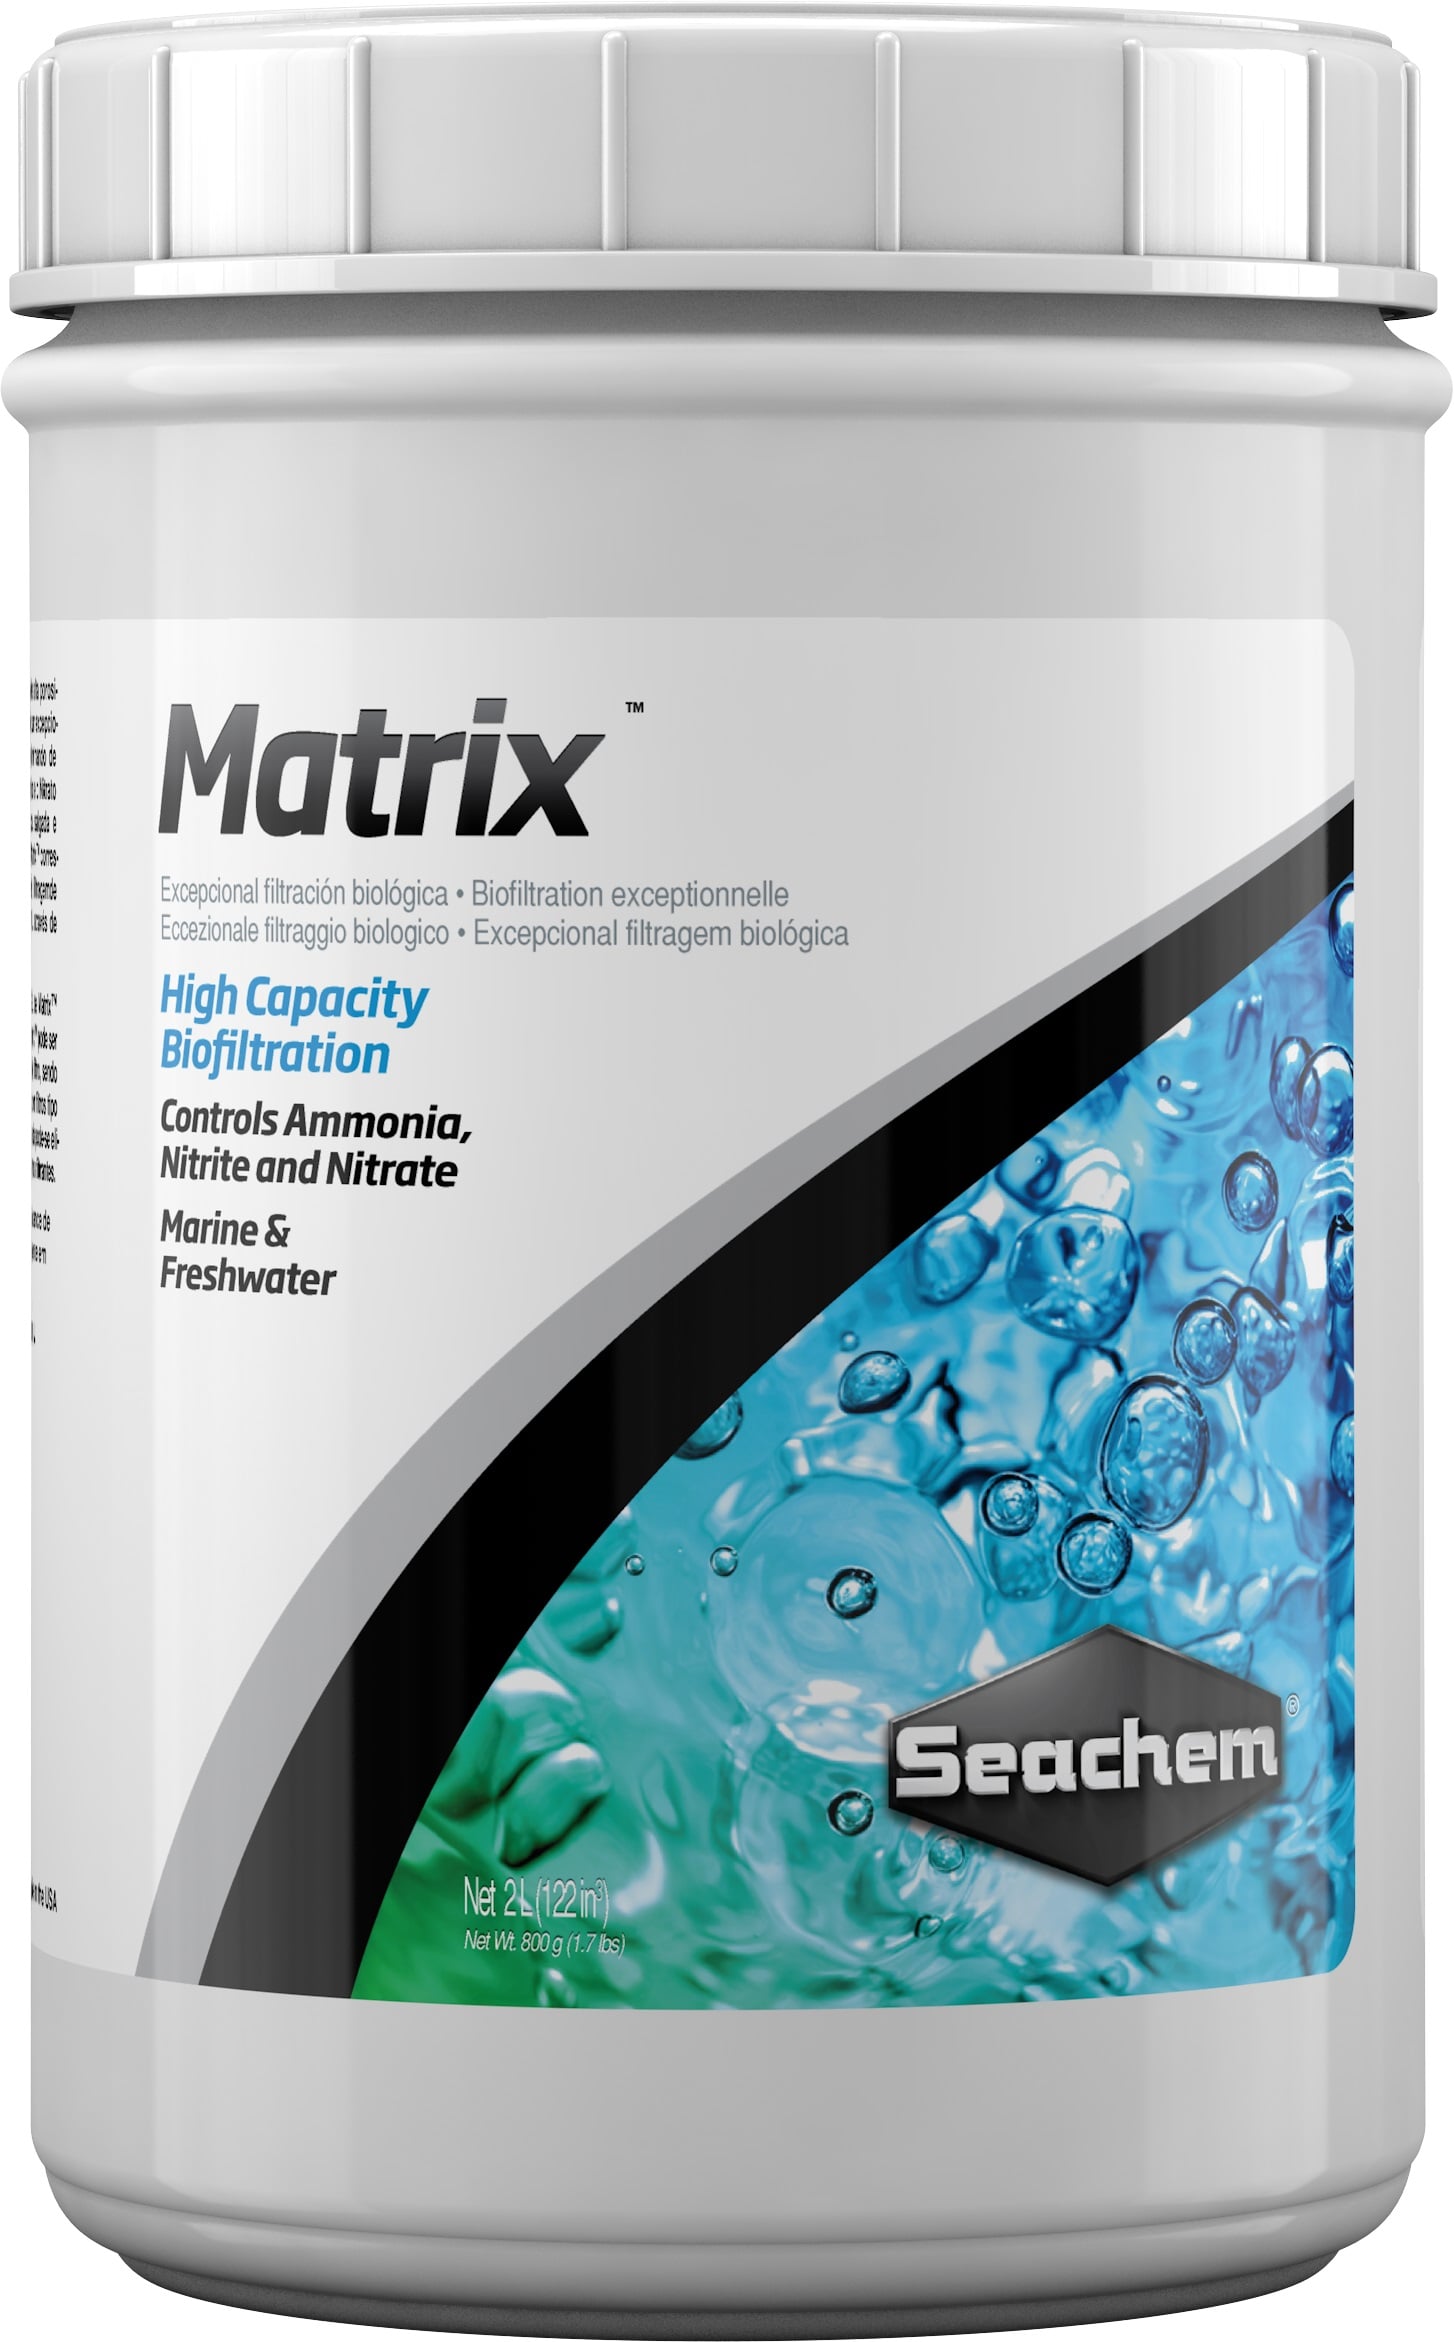 seachem-matrix-masse-de-filtration-biologique-2l-min